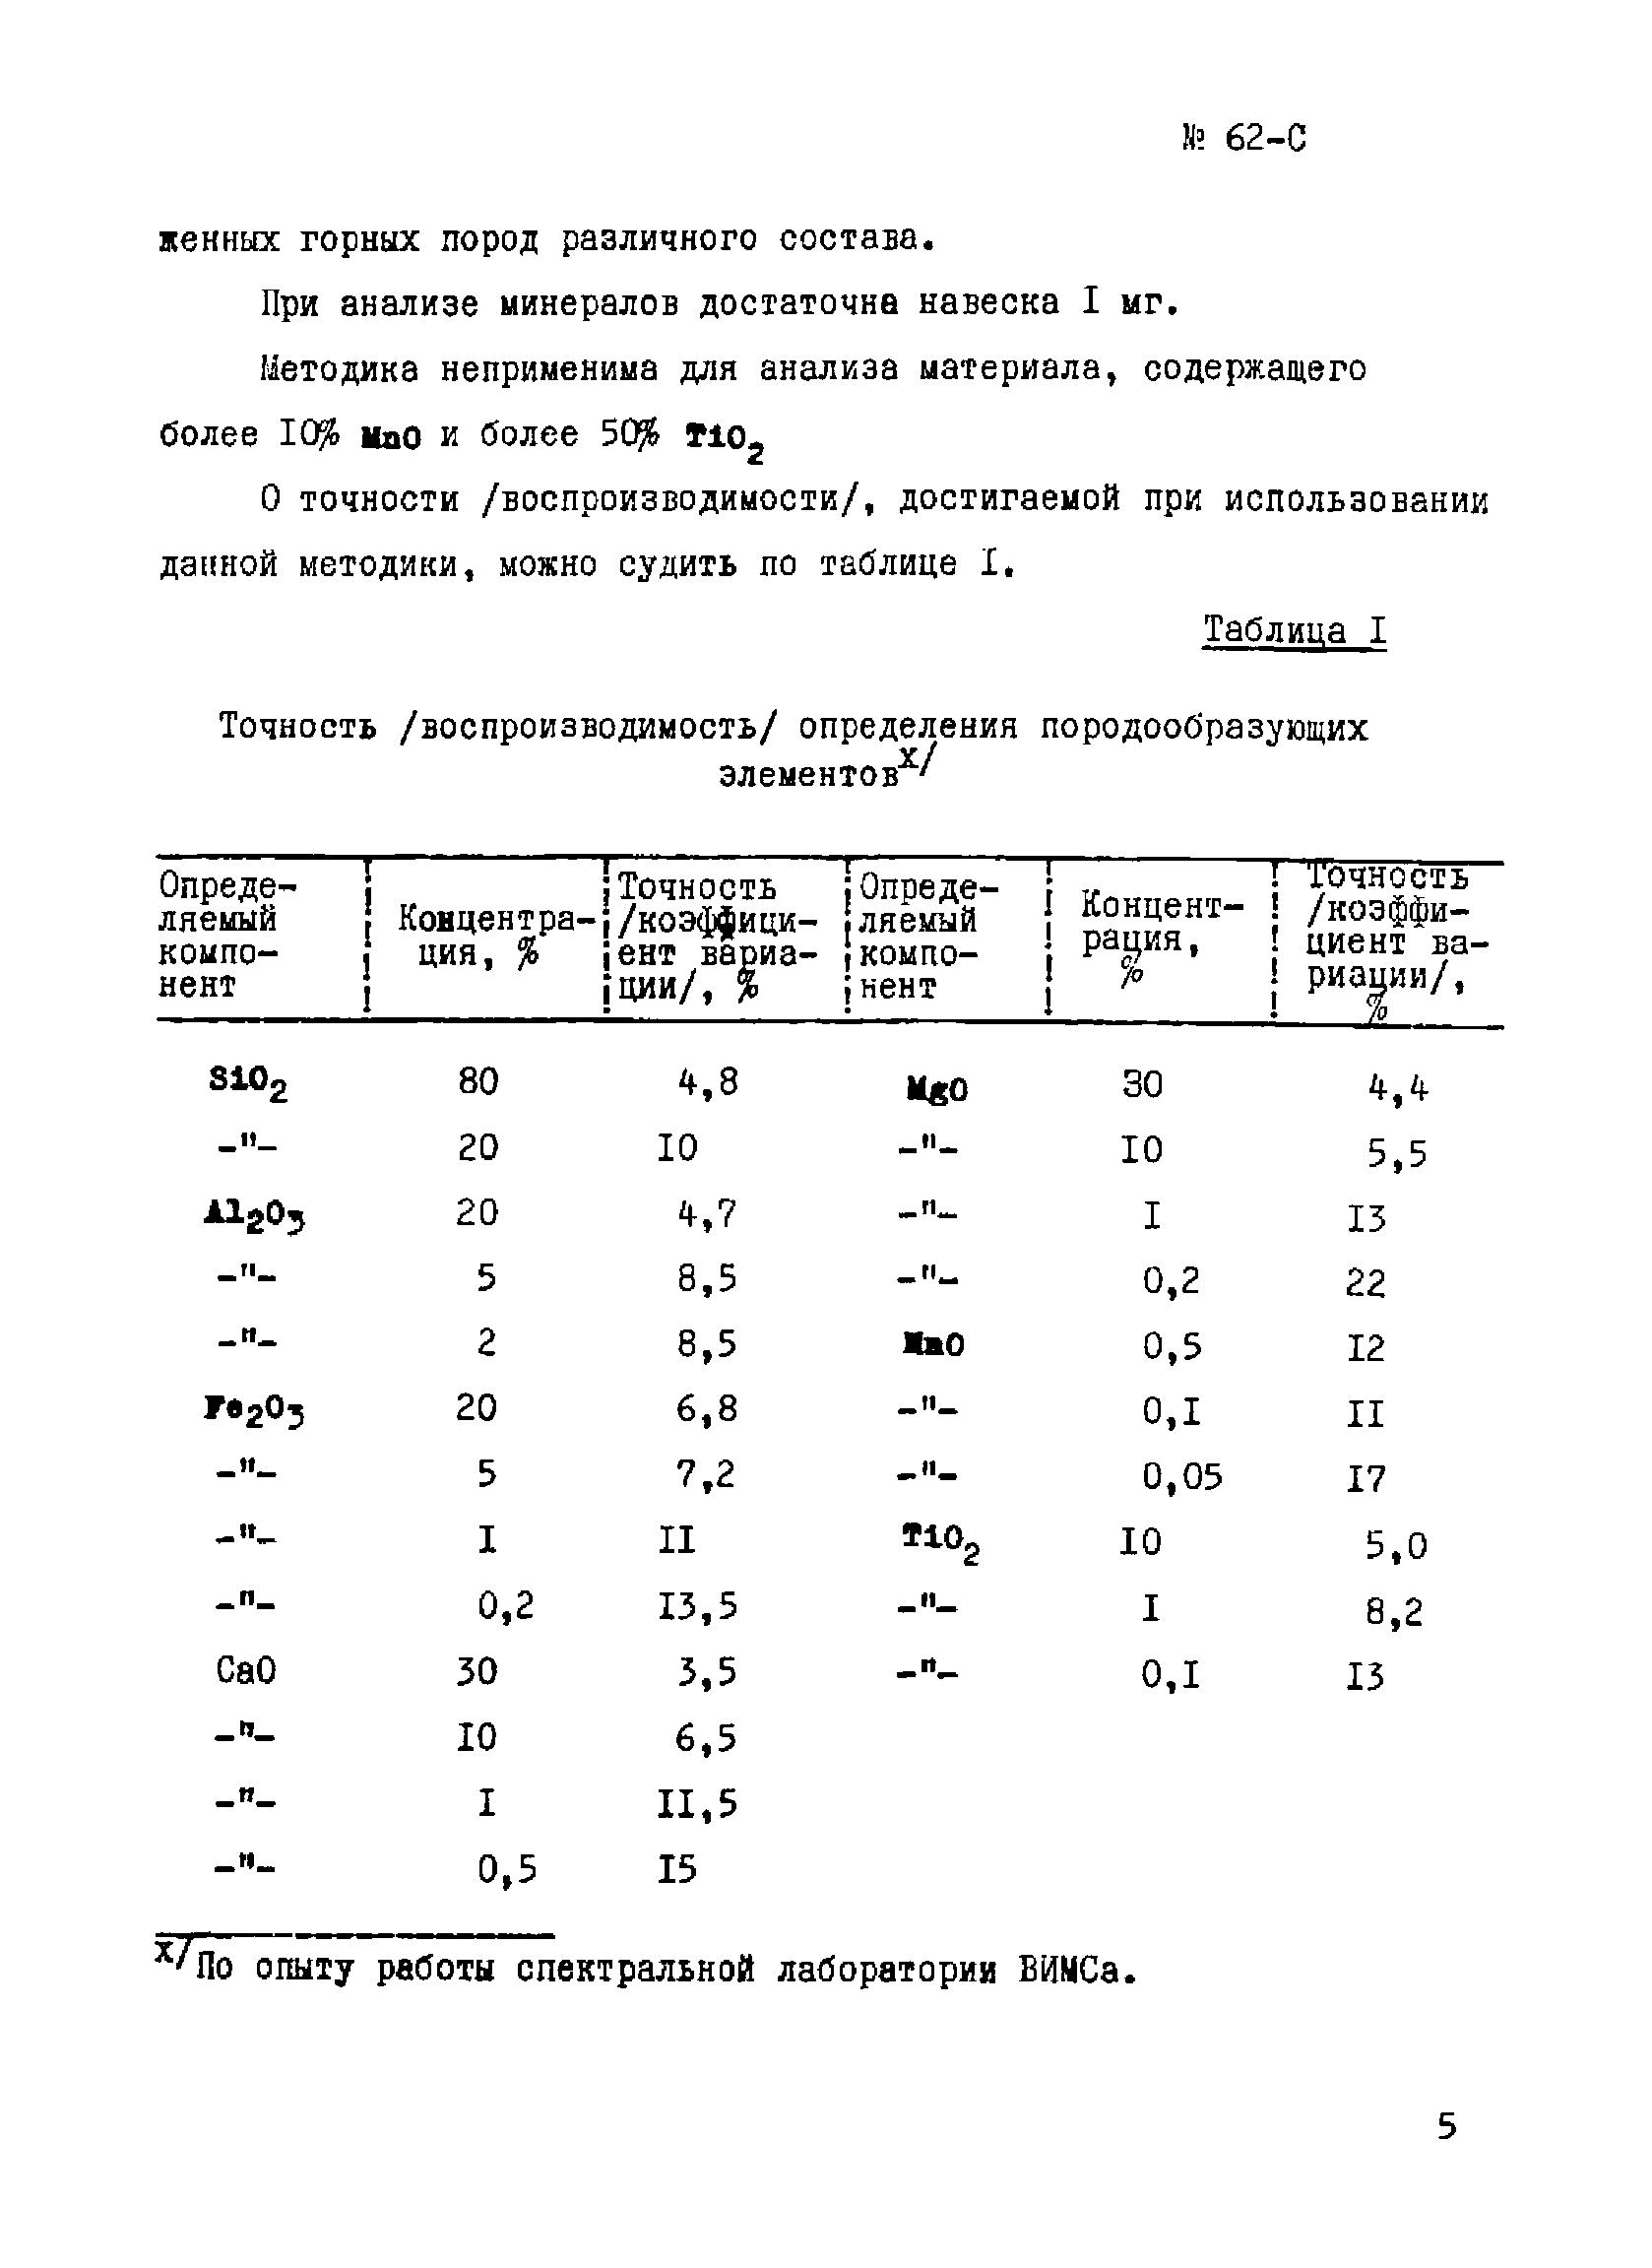 Инструкция НСАМ 62-С